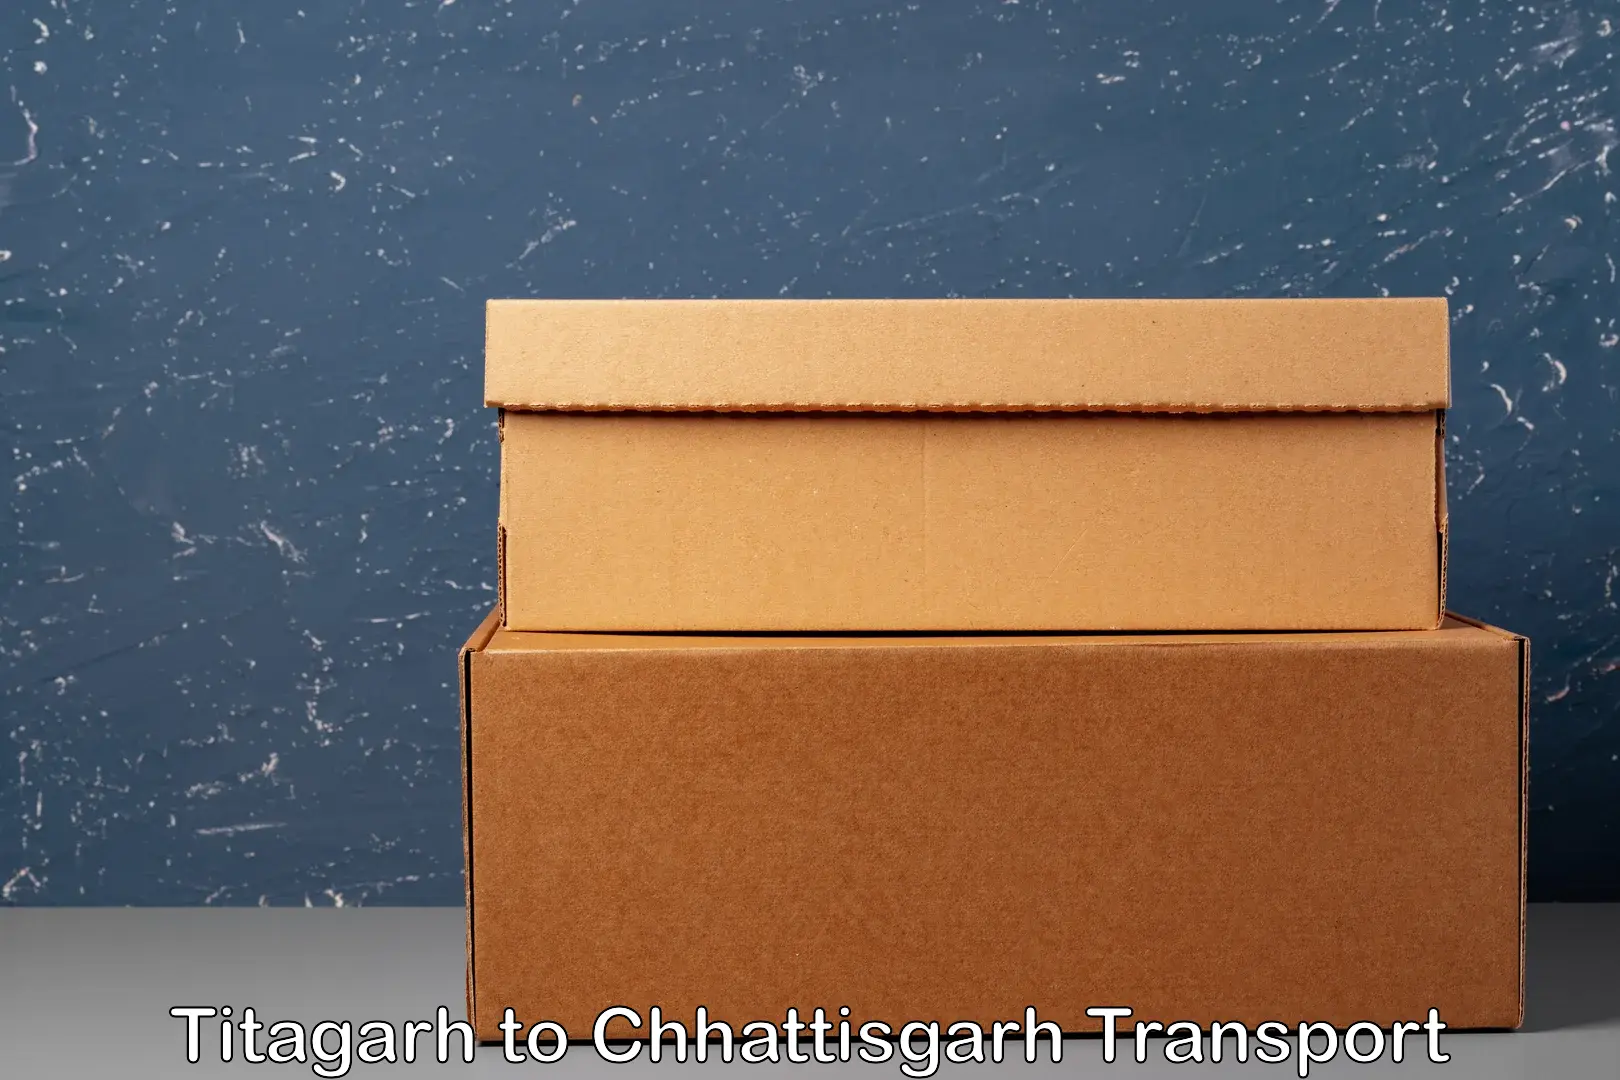 Container transportation services Titagarh to Chhattisgarh